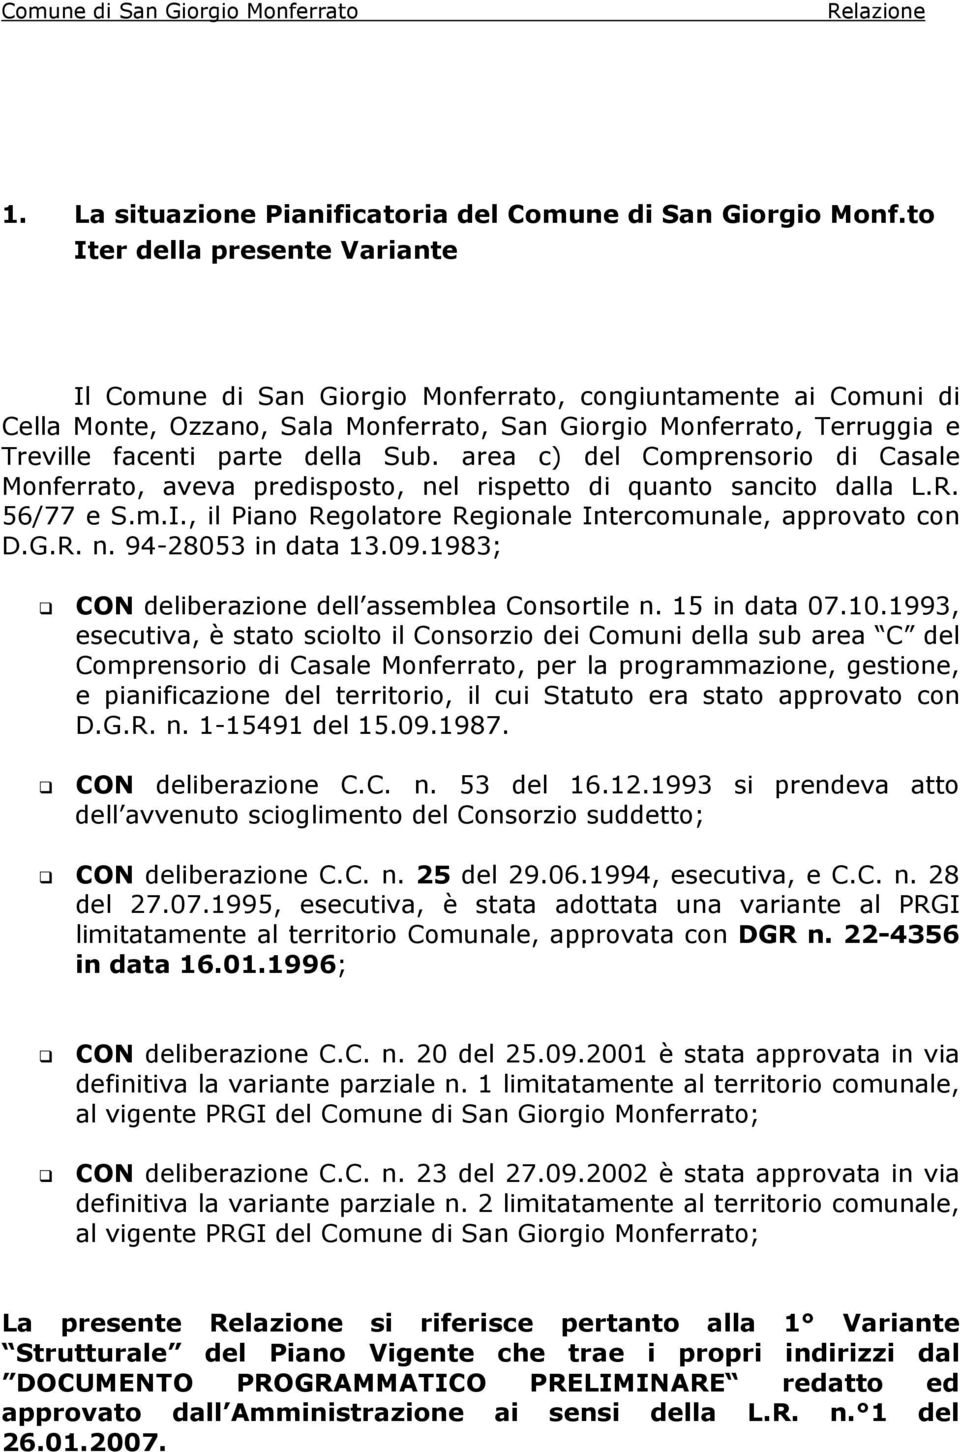 Sub. area c) del Comprensorio di Casale Monferrato, aveva predisposto, nel rispetto di quanto sancito dalla L.R. 56/77 e S.m.I., il Piano Regolatore Regionale Intercomunale, approvato con D.G.R. n. 94-28053 in data 13.